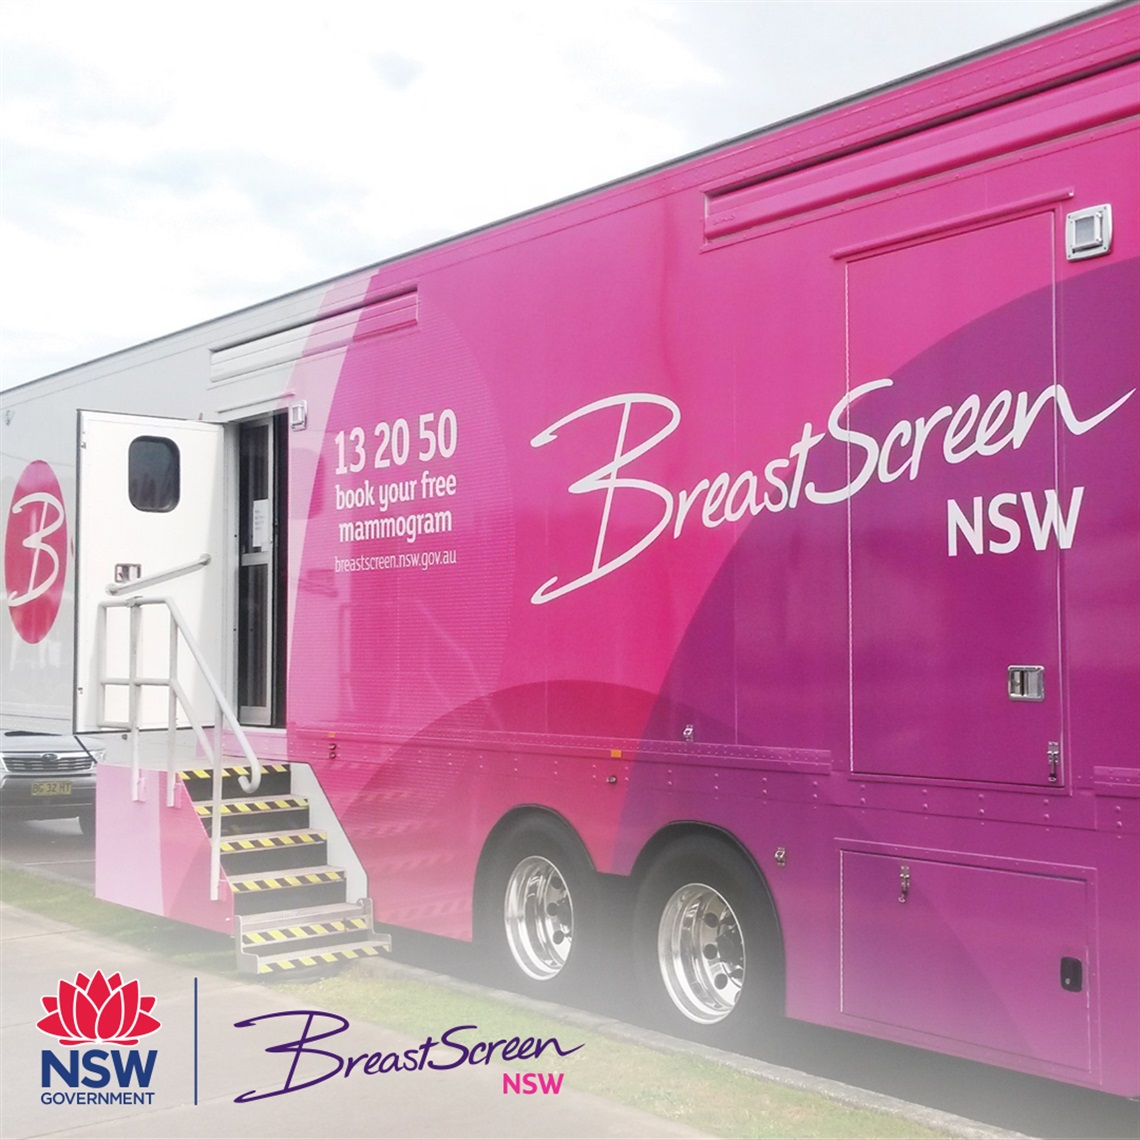 BreastScreen mobile van has arrived in Burwood!